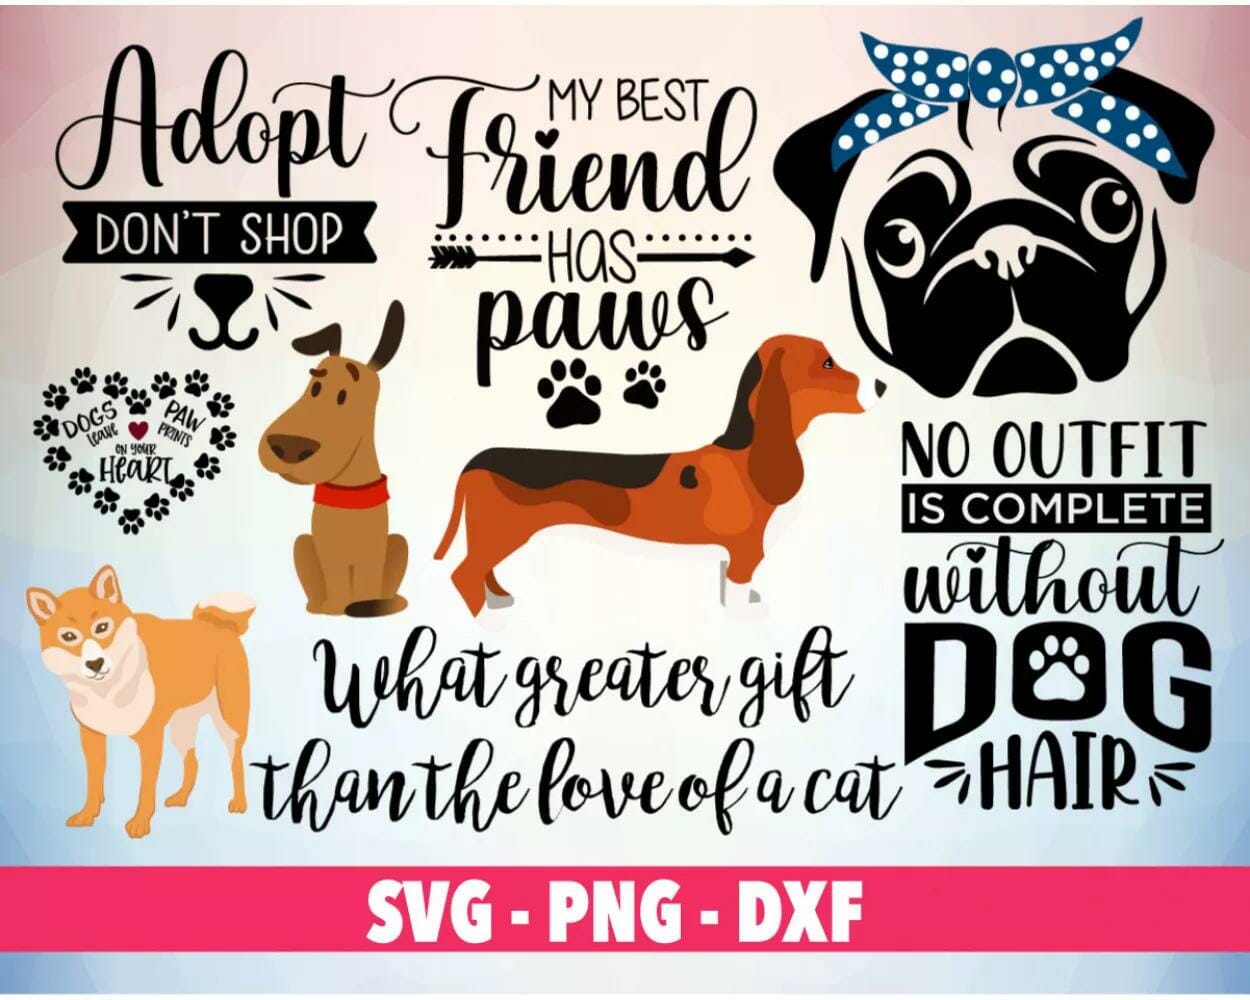 100+ Designs SVG PNG DXF Digital Download||||